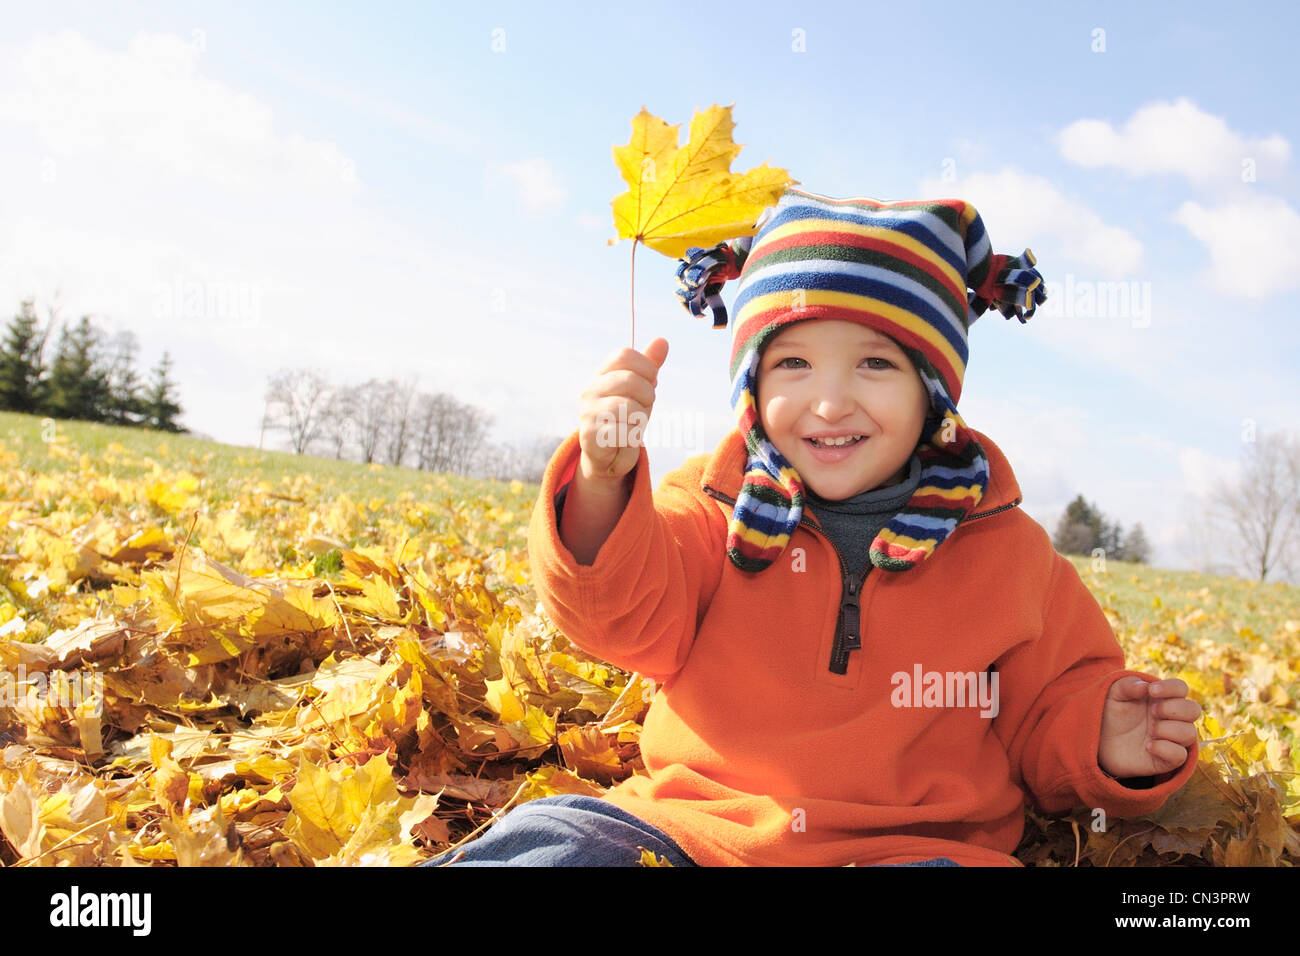 Jeune garçon jouant dans les feuilles d'automne Banque D'Images